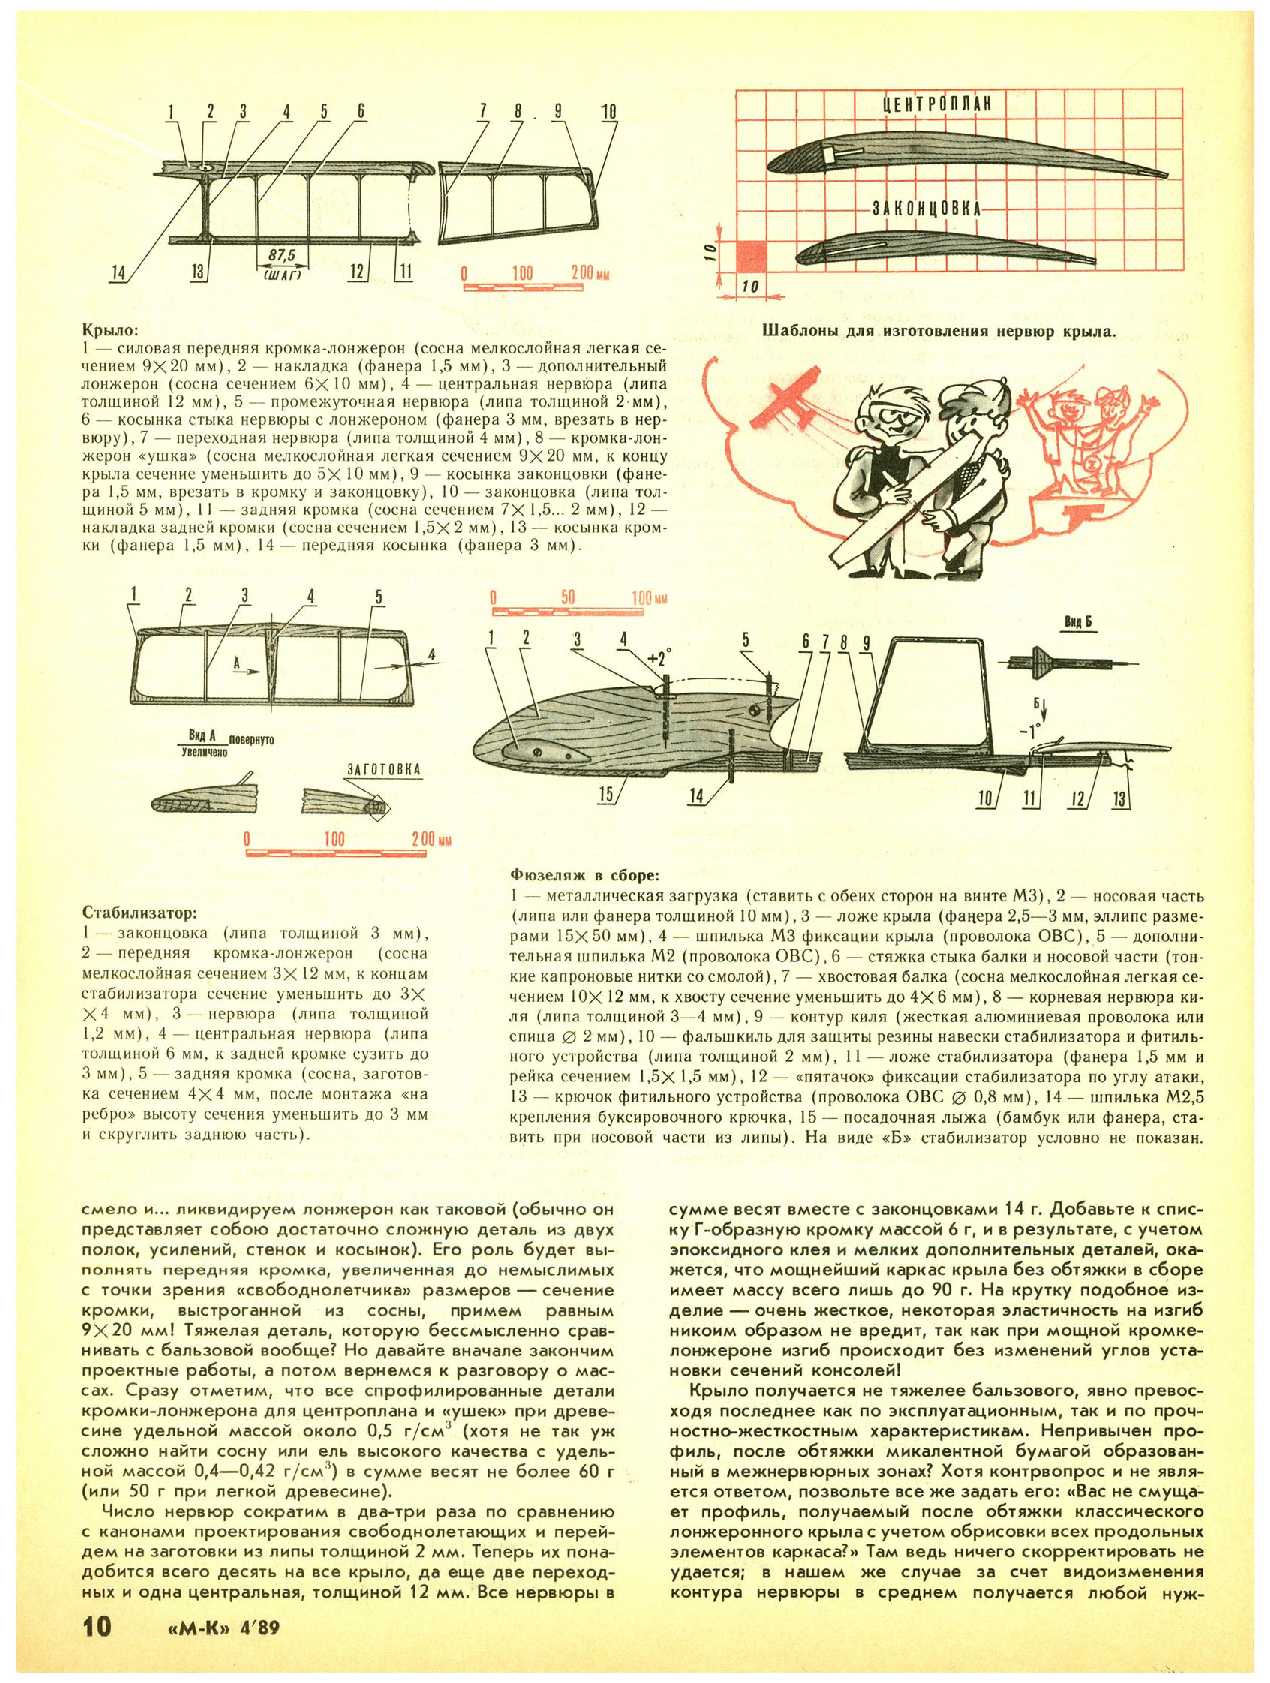 МК 4, 1989, 10 c.